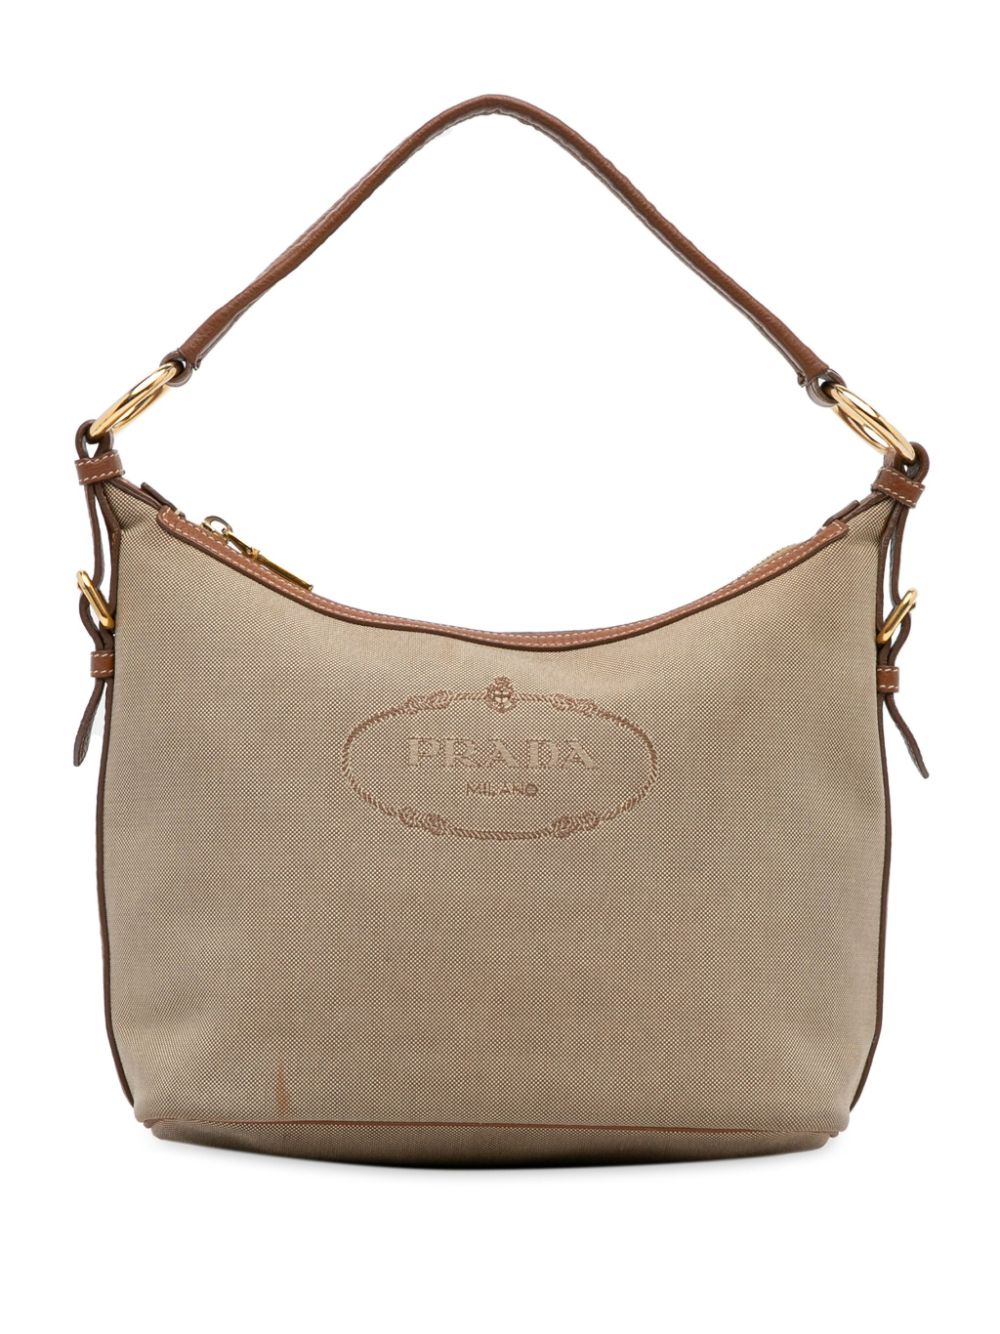 Pre-owned Prada 2010-2022 Canapa Shoulder Bag In Brown